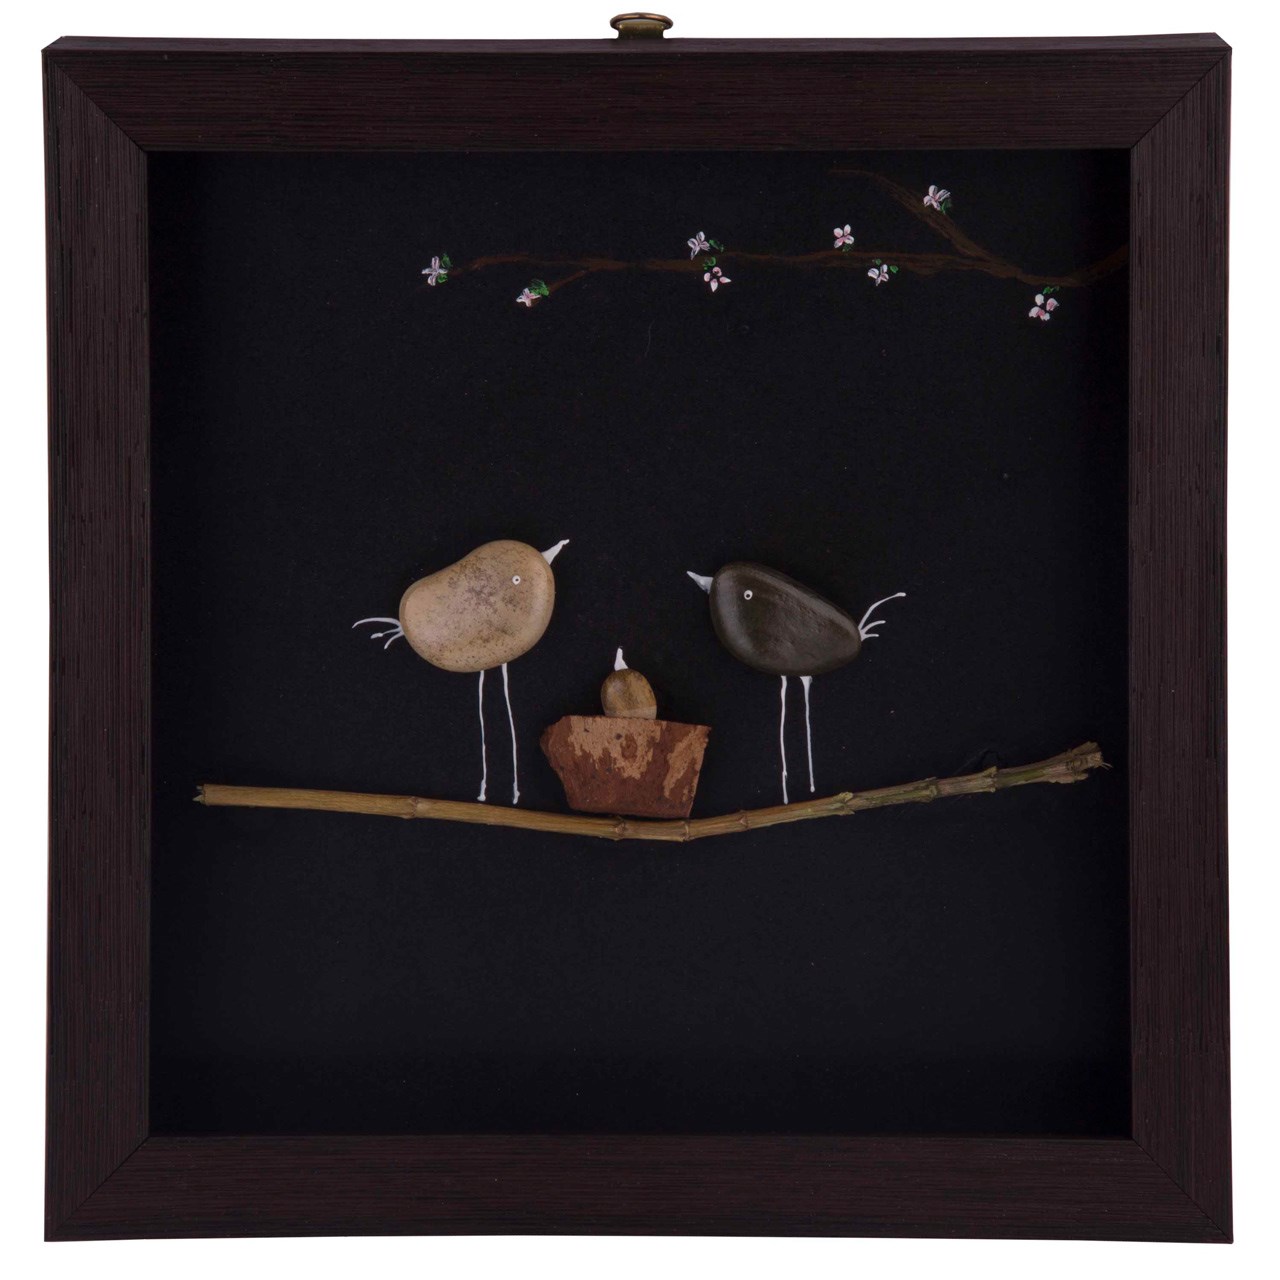 تابلو کلاژ سنگ گالری سی پرشیا طرح پرندگان کد 201104